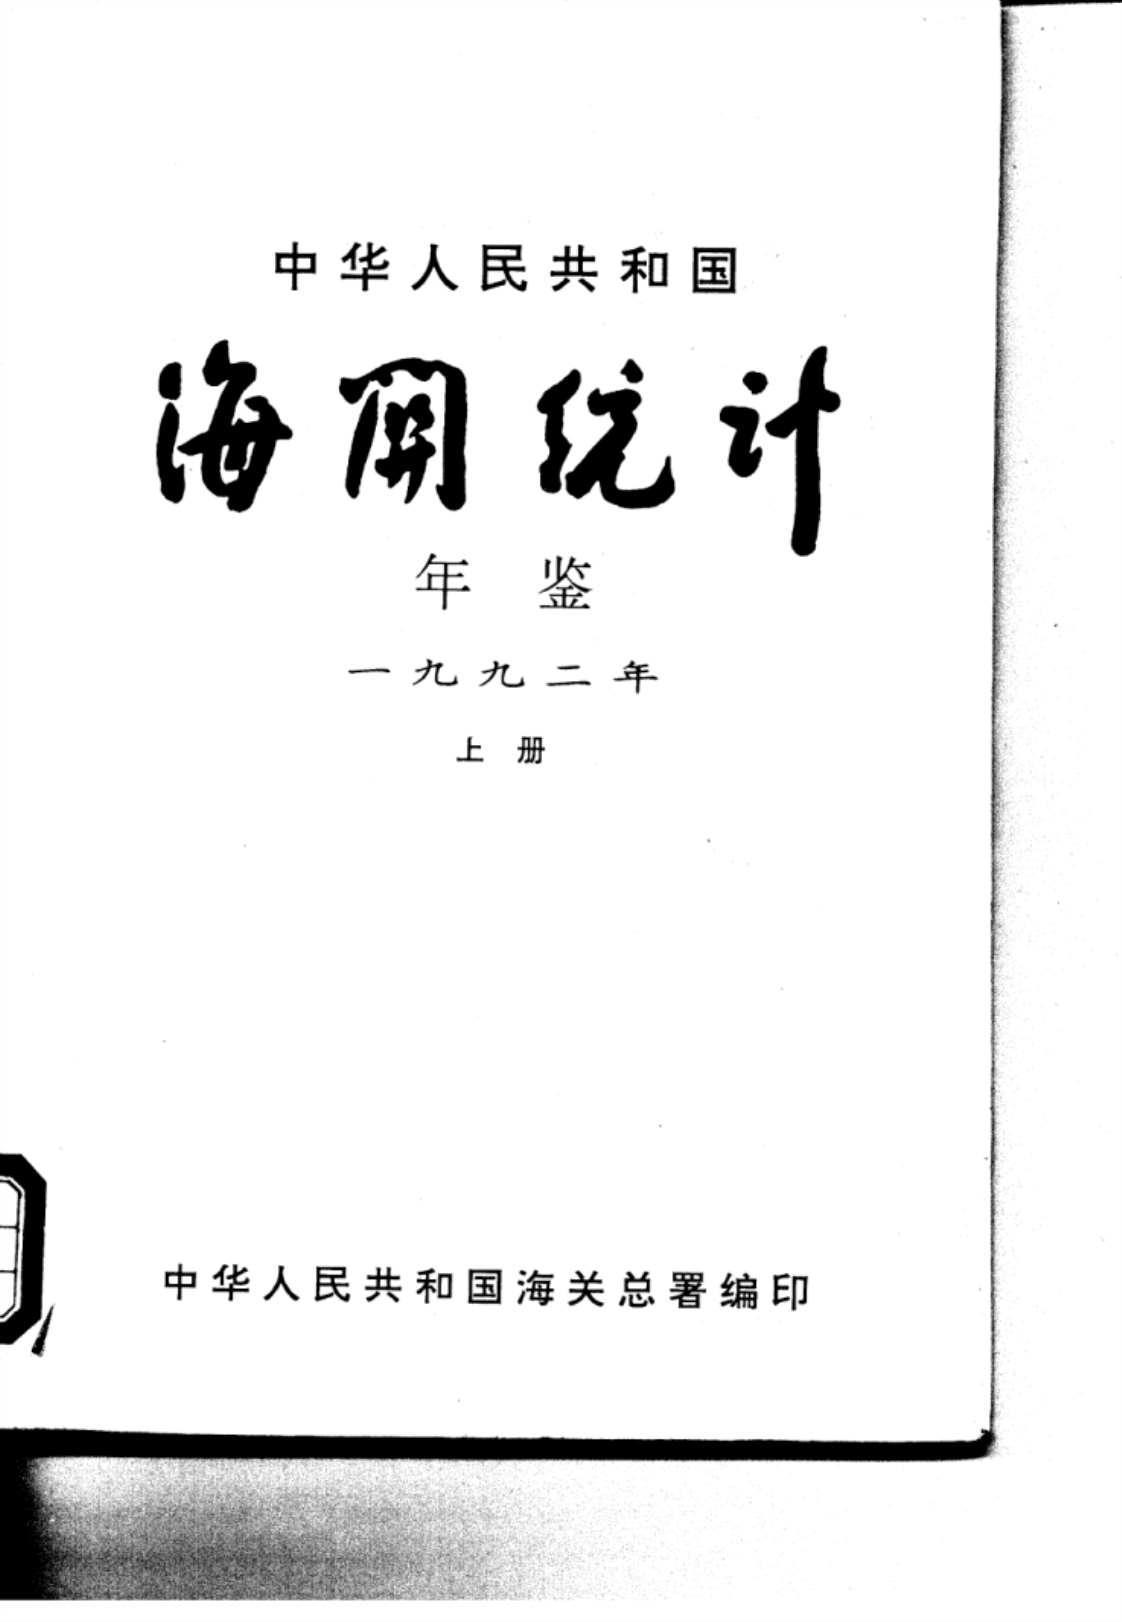 [1992年中国海关统计年鉴(上册)]高清PDF电子书下载